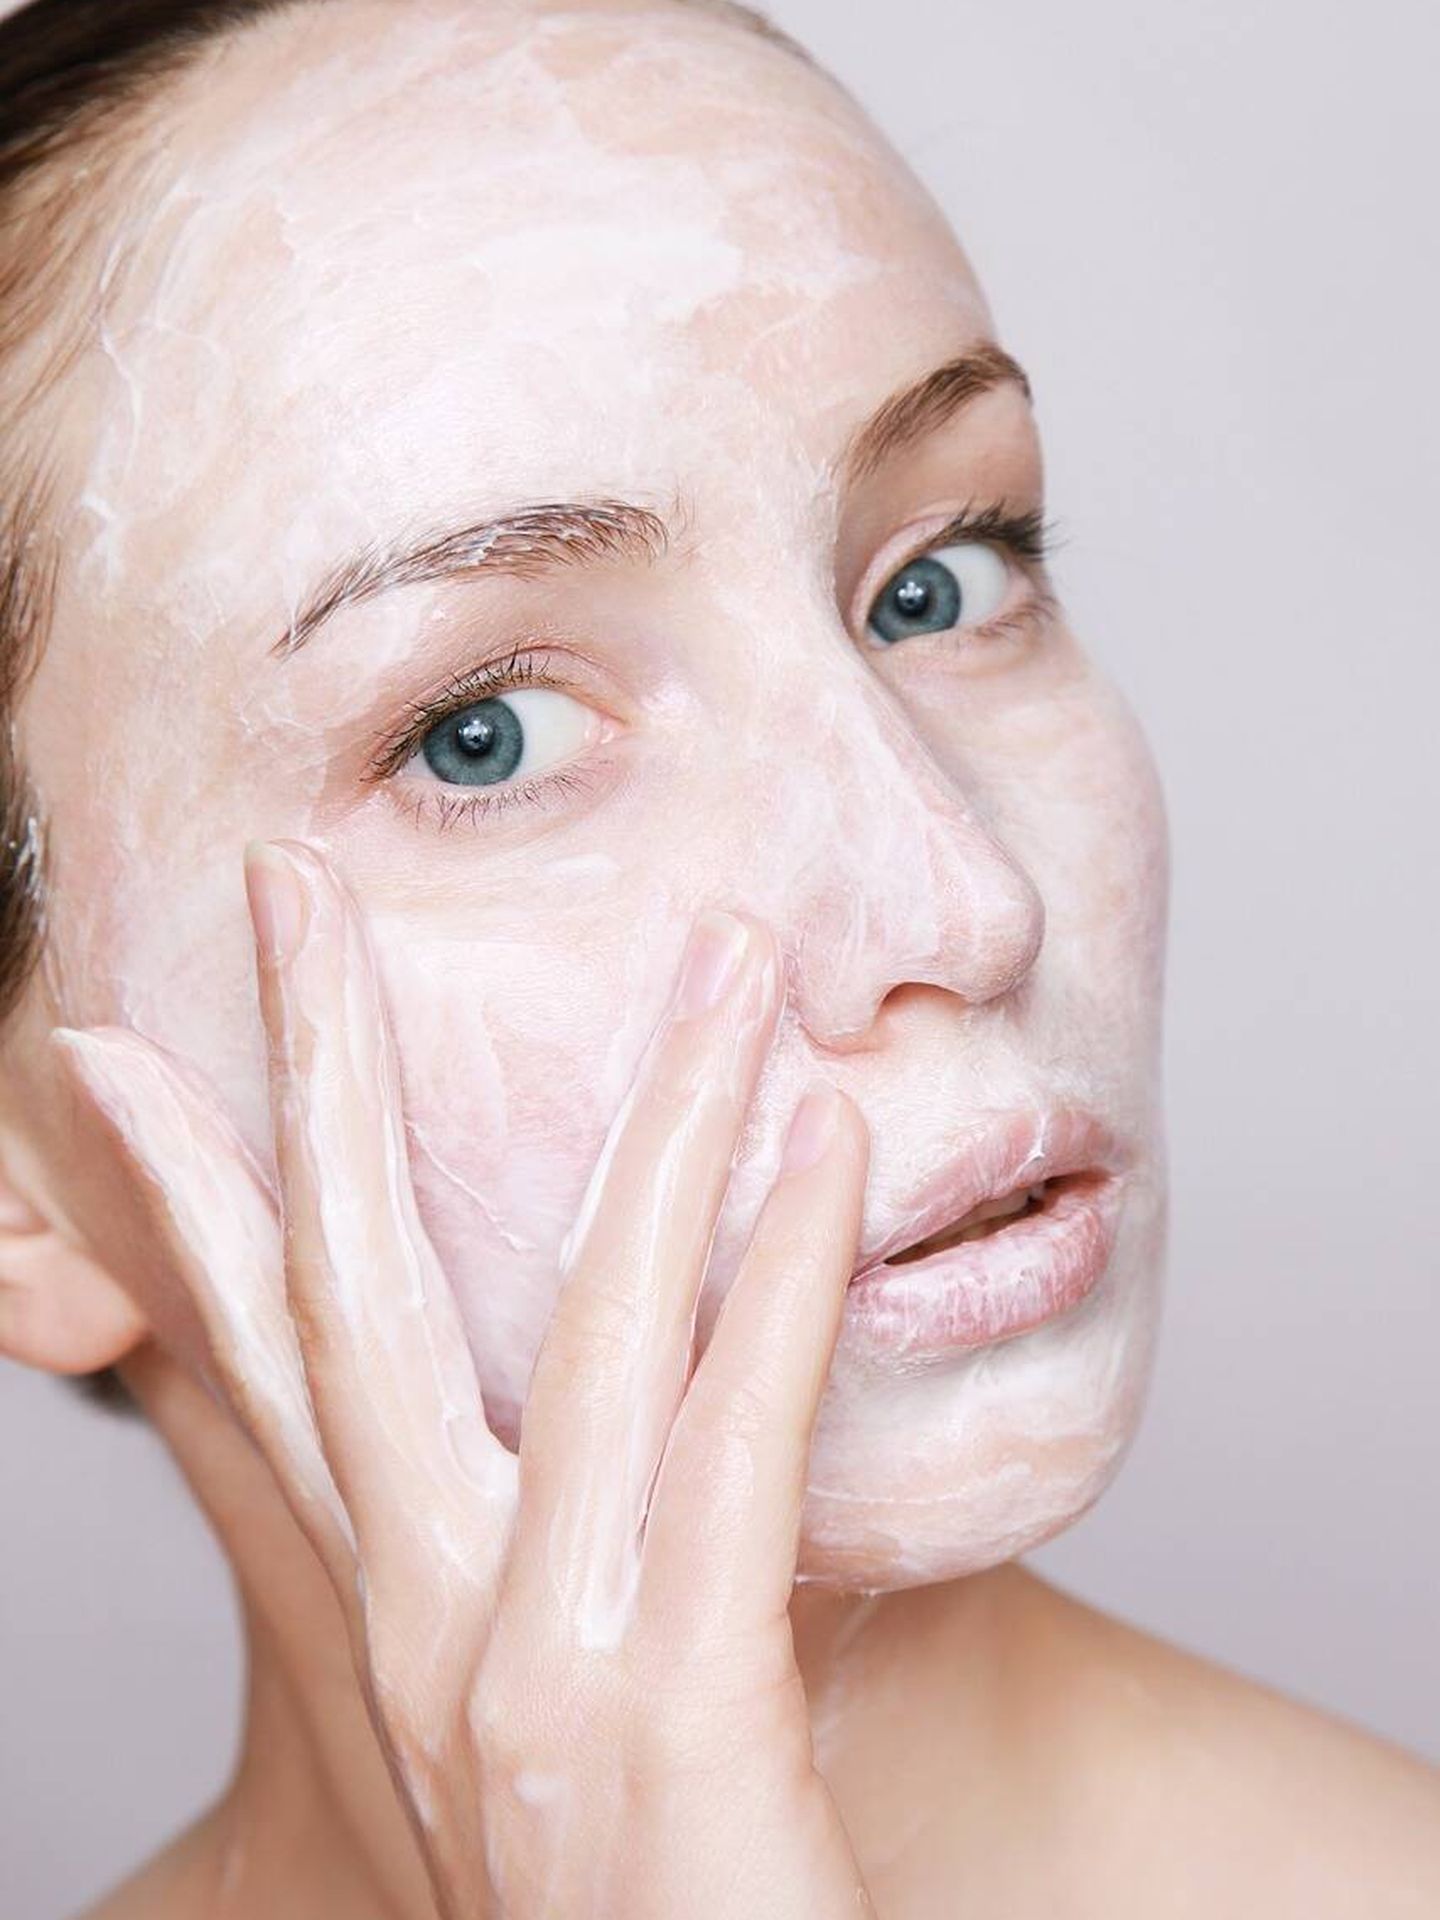 La limpieza es el paso básico más importante para controlar el acné en casa. (Pixabay)